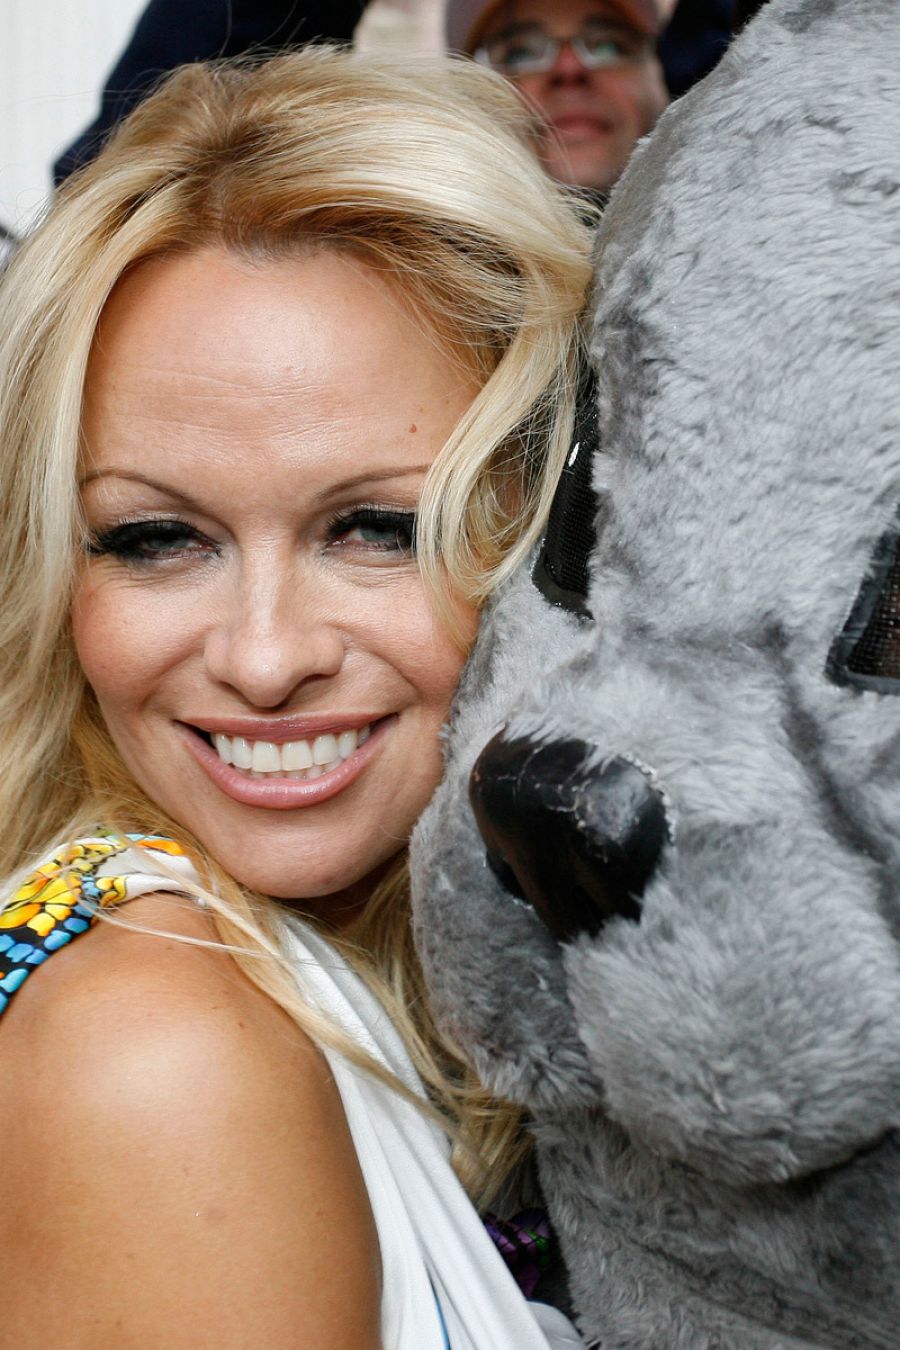 La casa de Malibú de Pamela Anderson y Tommy Leee